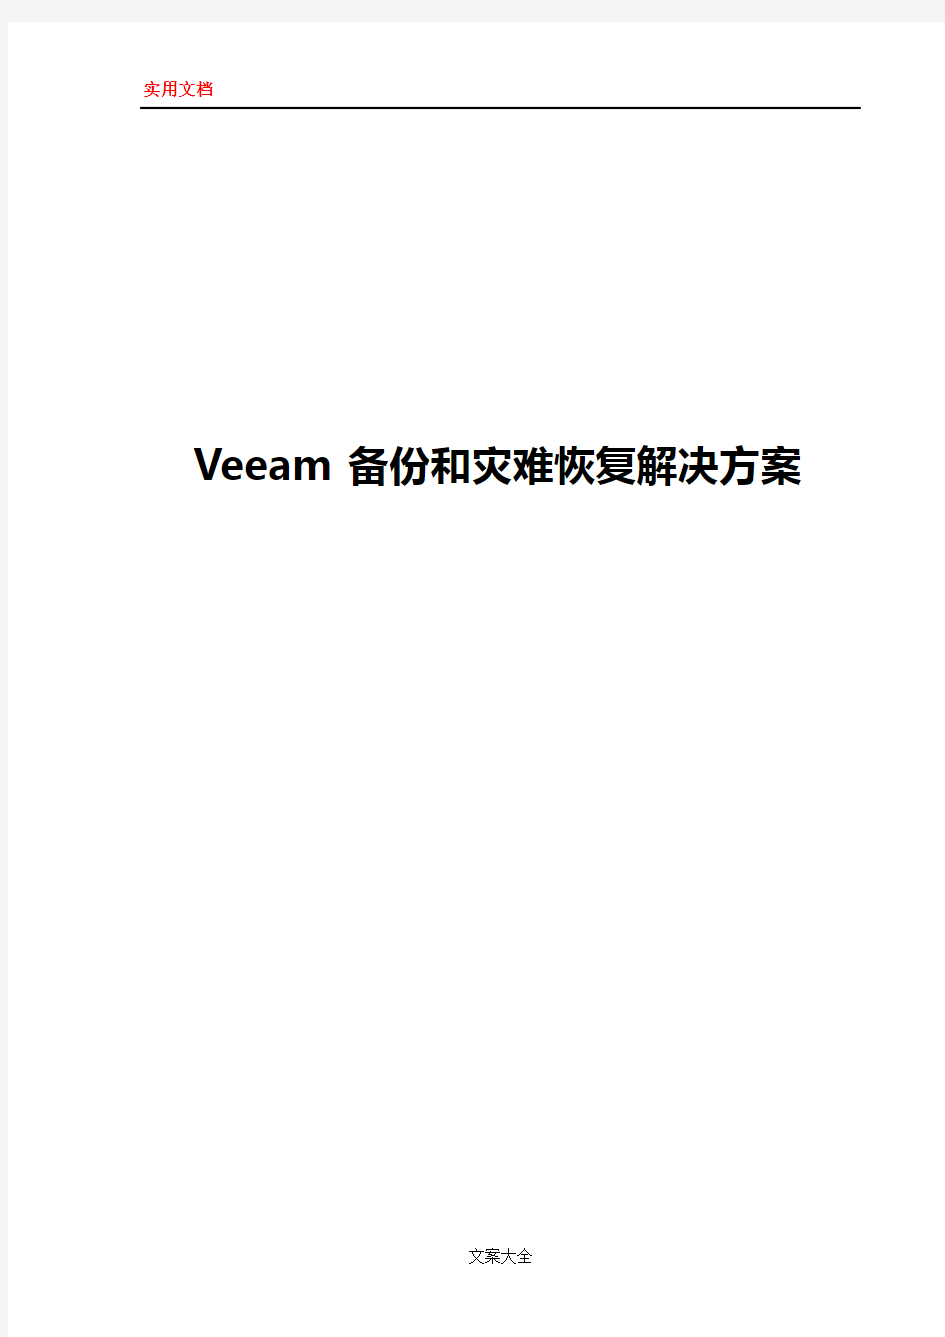 Veeam_备份和灾难恢复解决方案设计